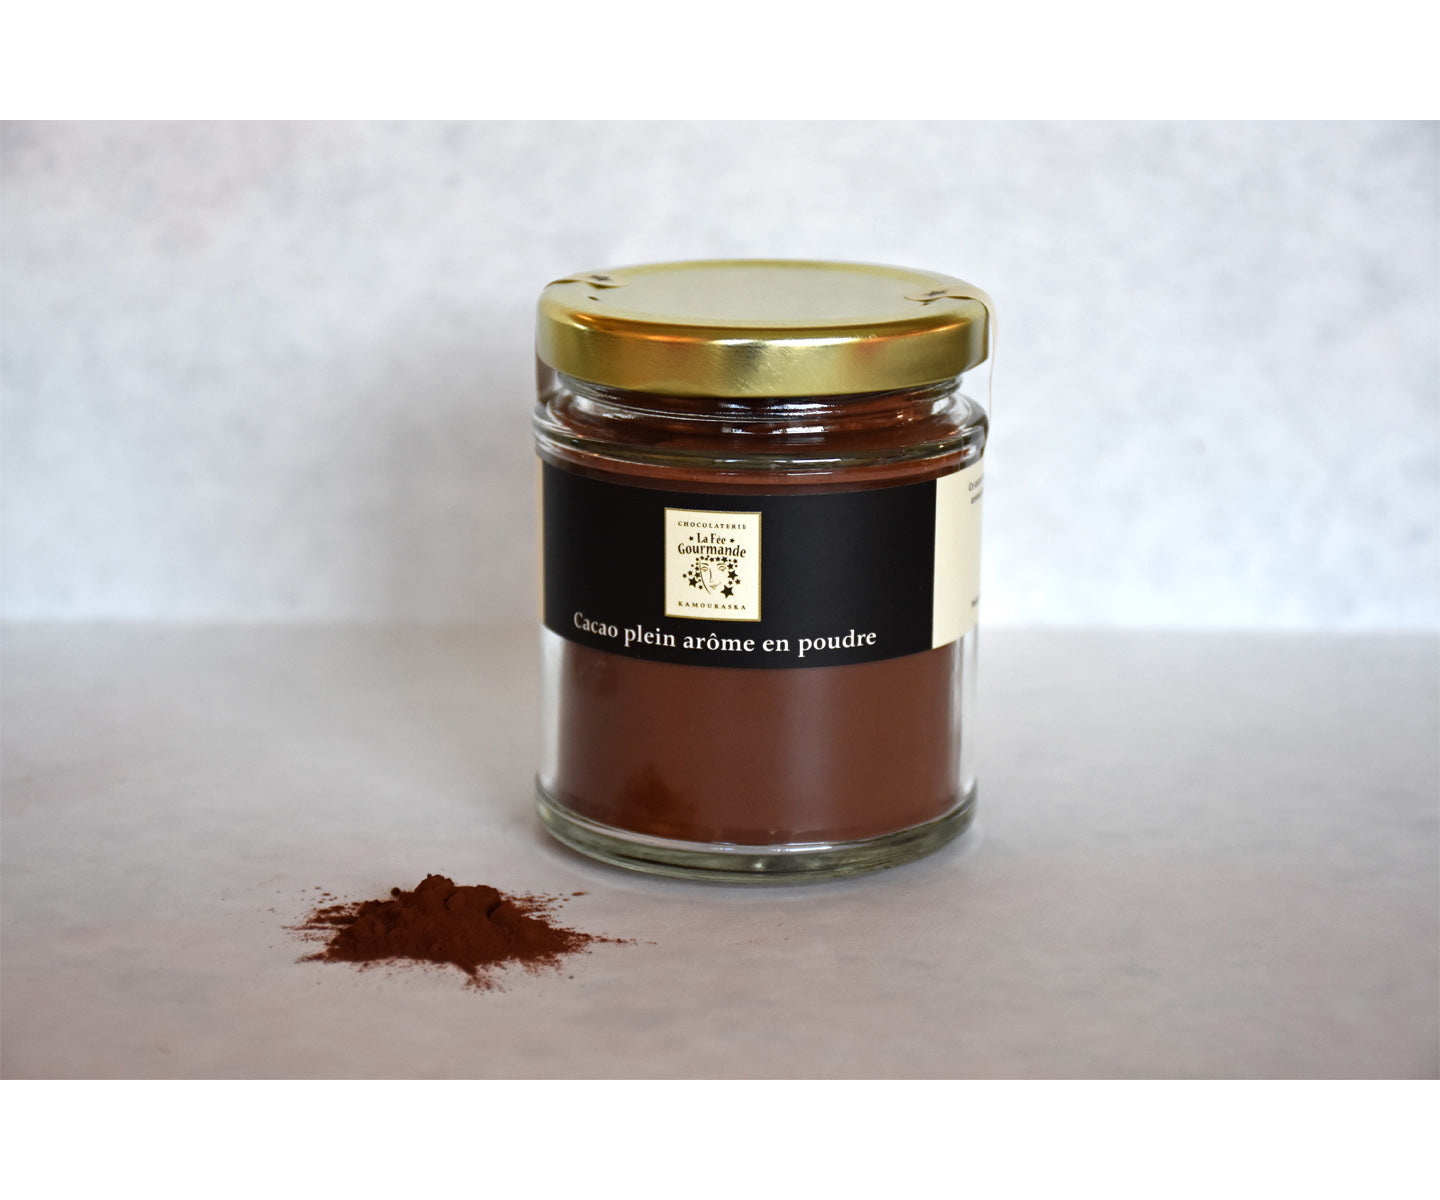 Cacao plein arôme en poudre (75 g)